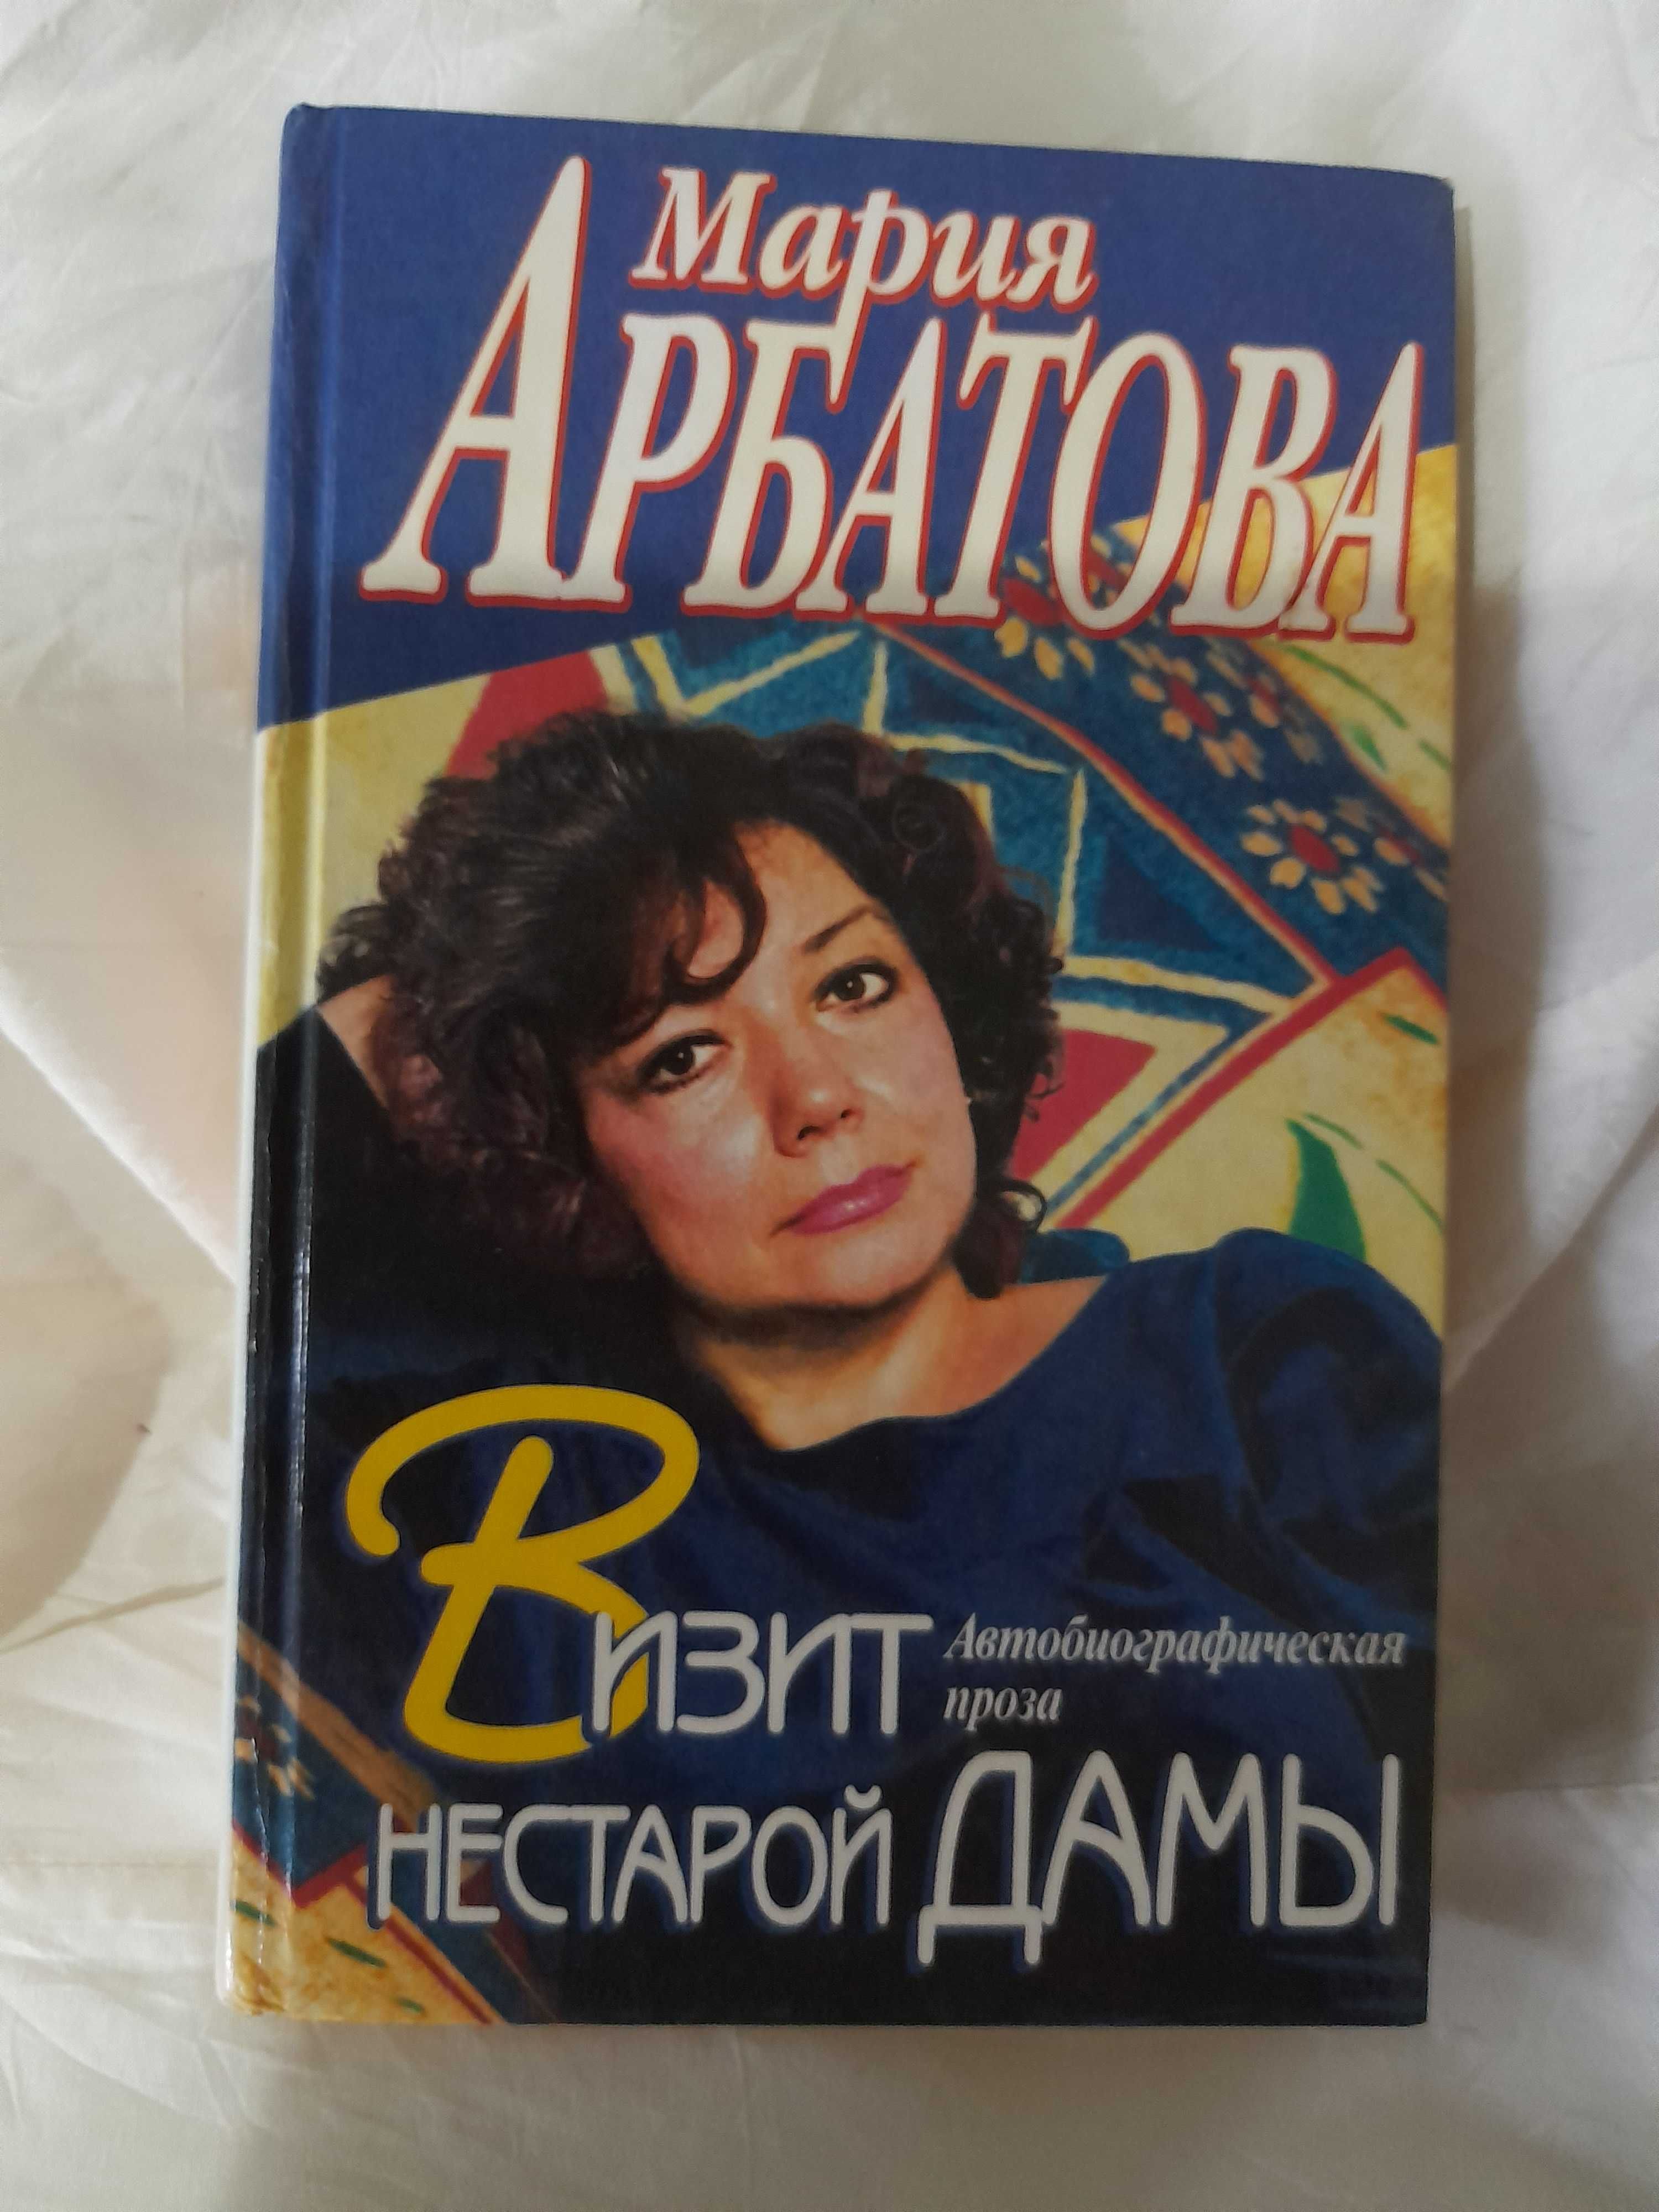 4 книги М. Арбатова